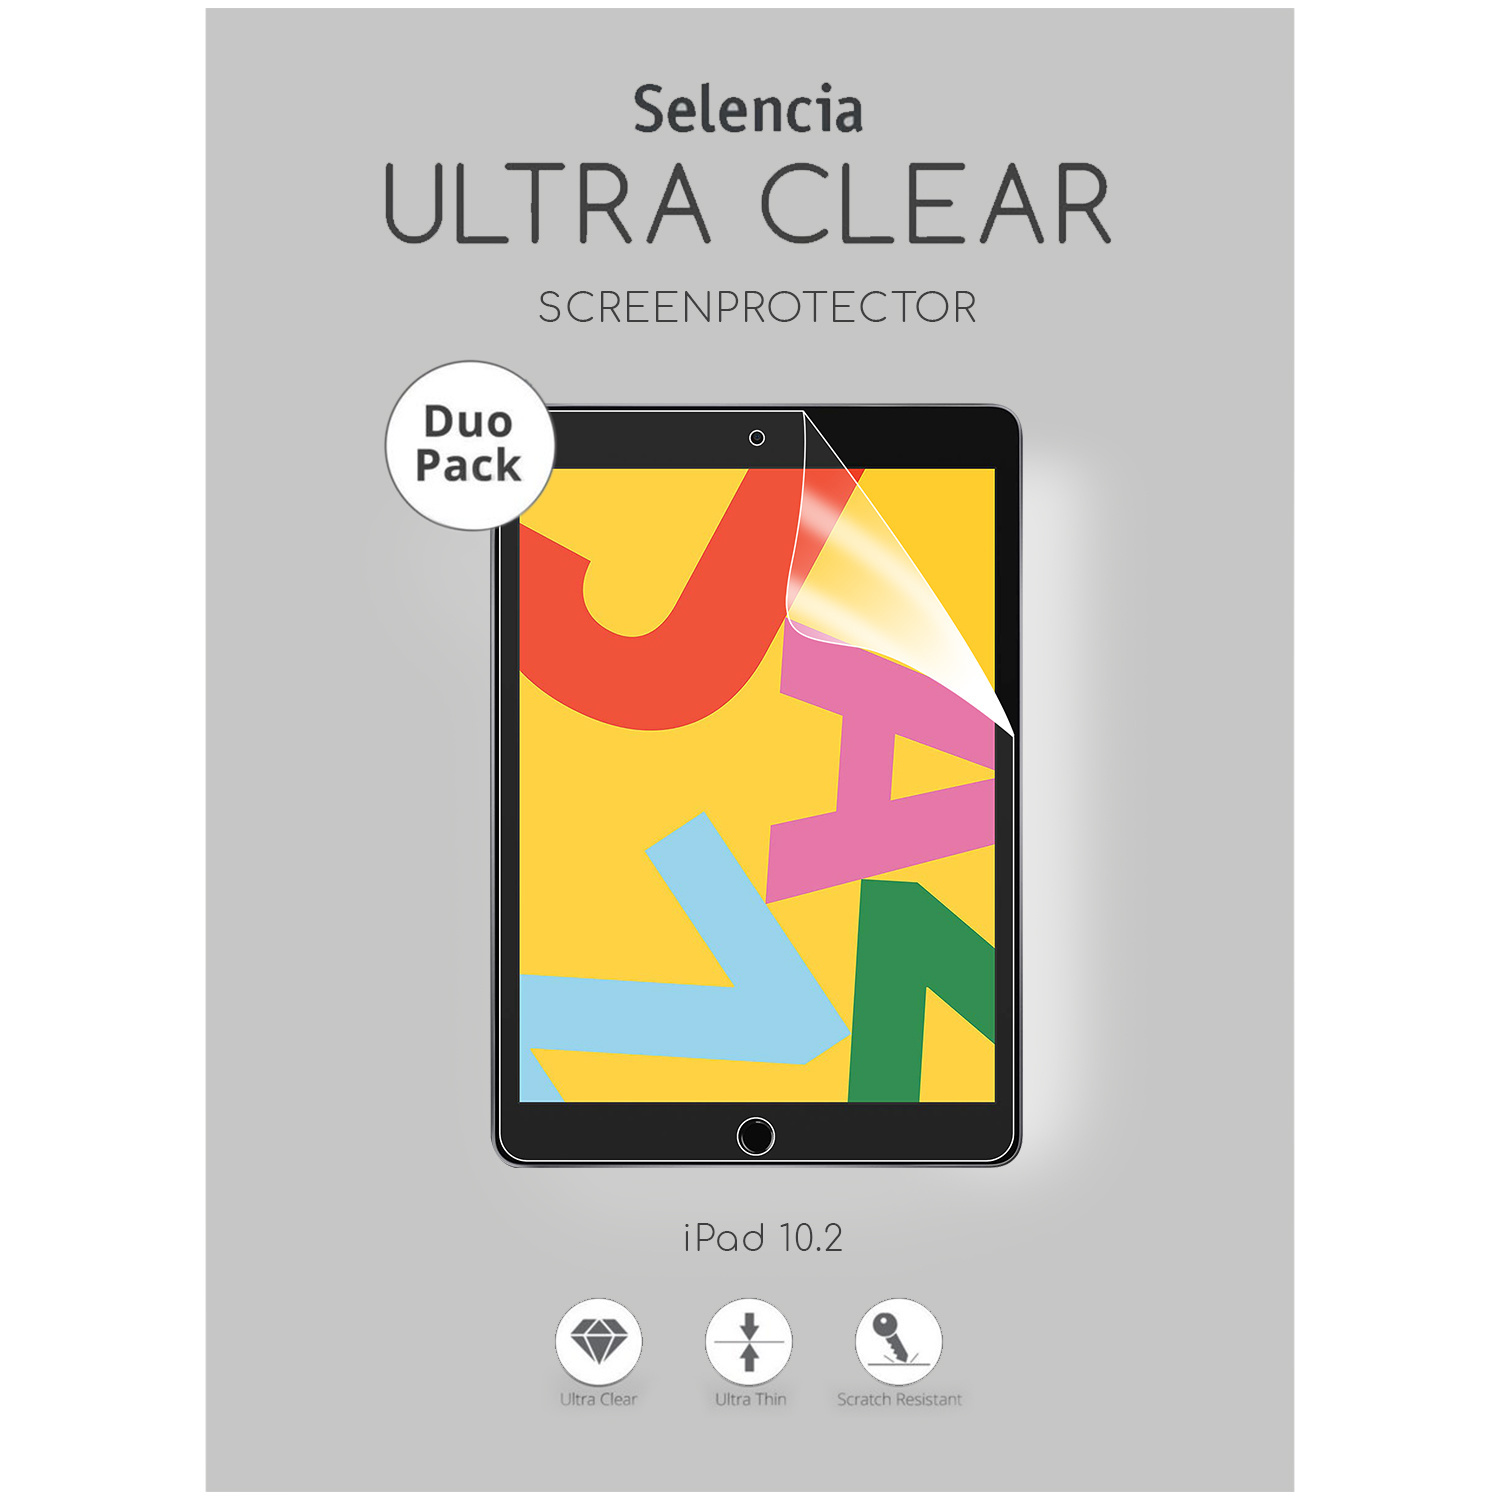 Selencia Duo Pack Screenprotector voor de iPad 10.2